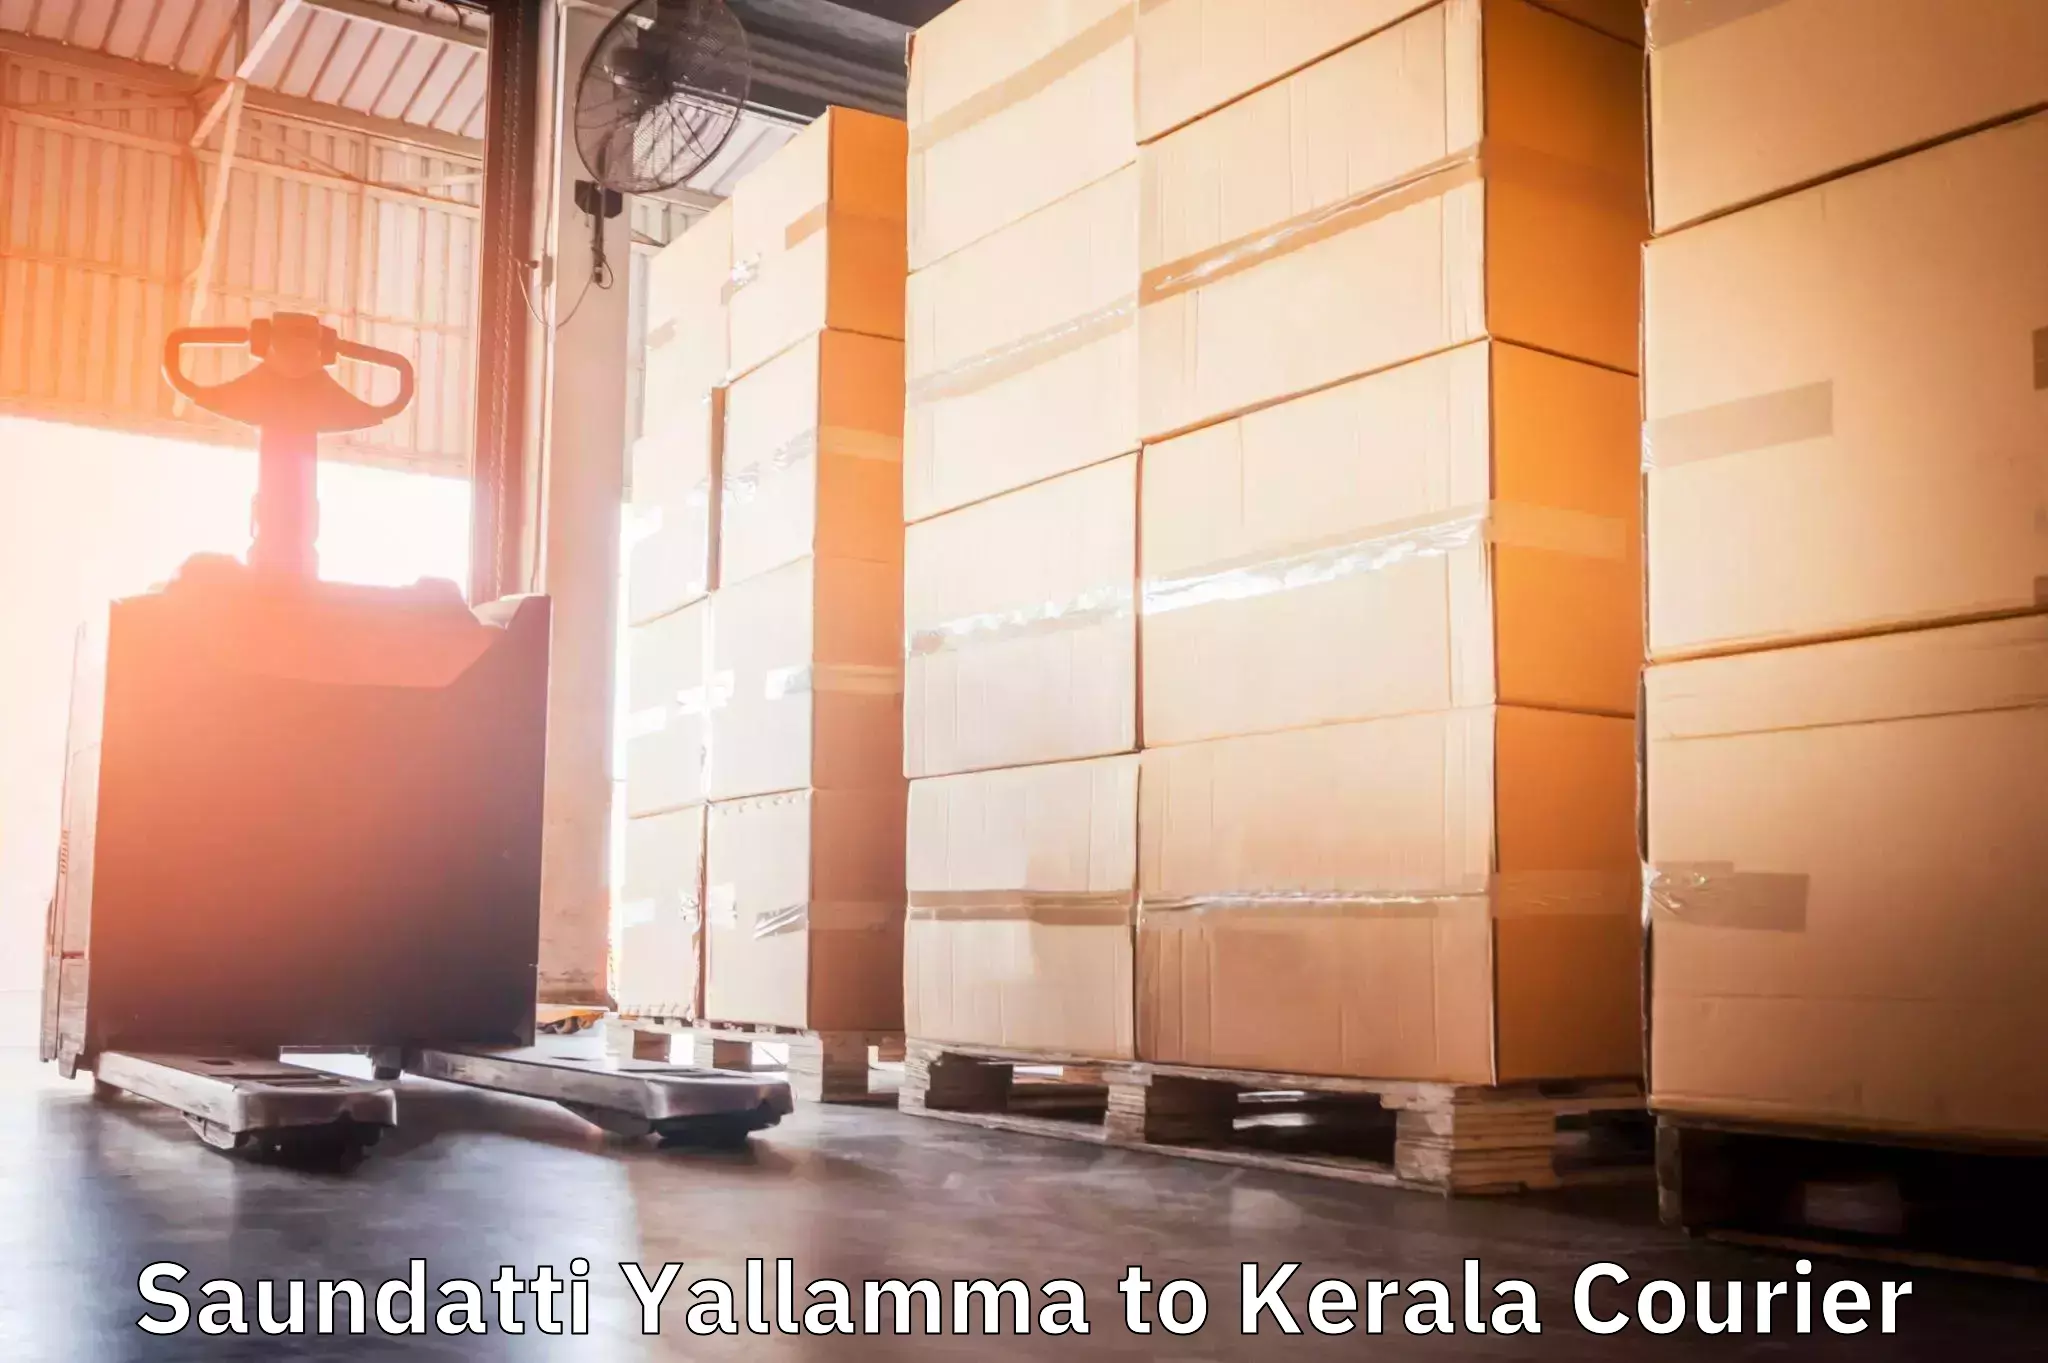 Efficient parcel service Saundatti Yallamma to Kothanalloor